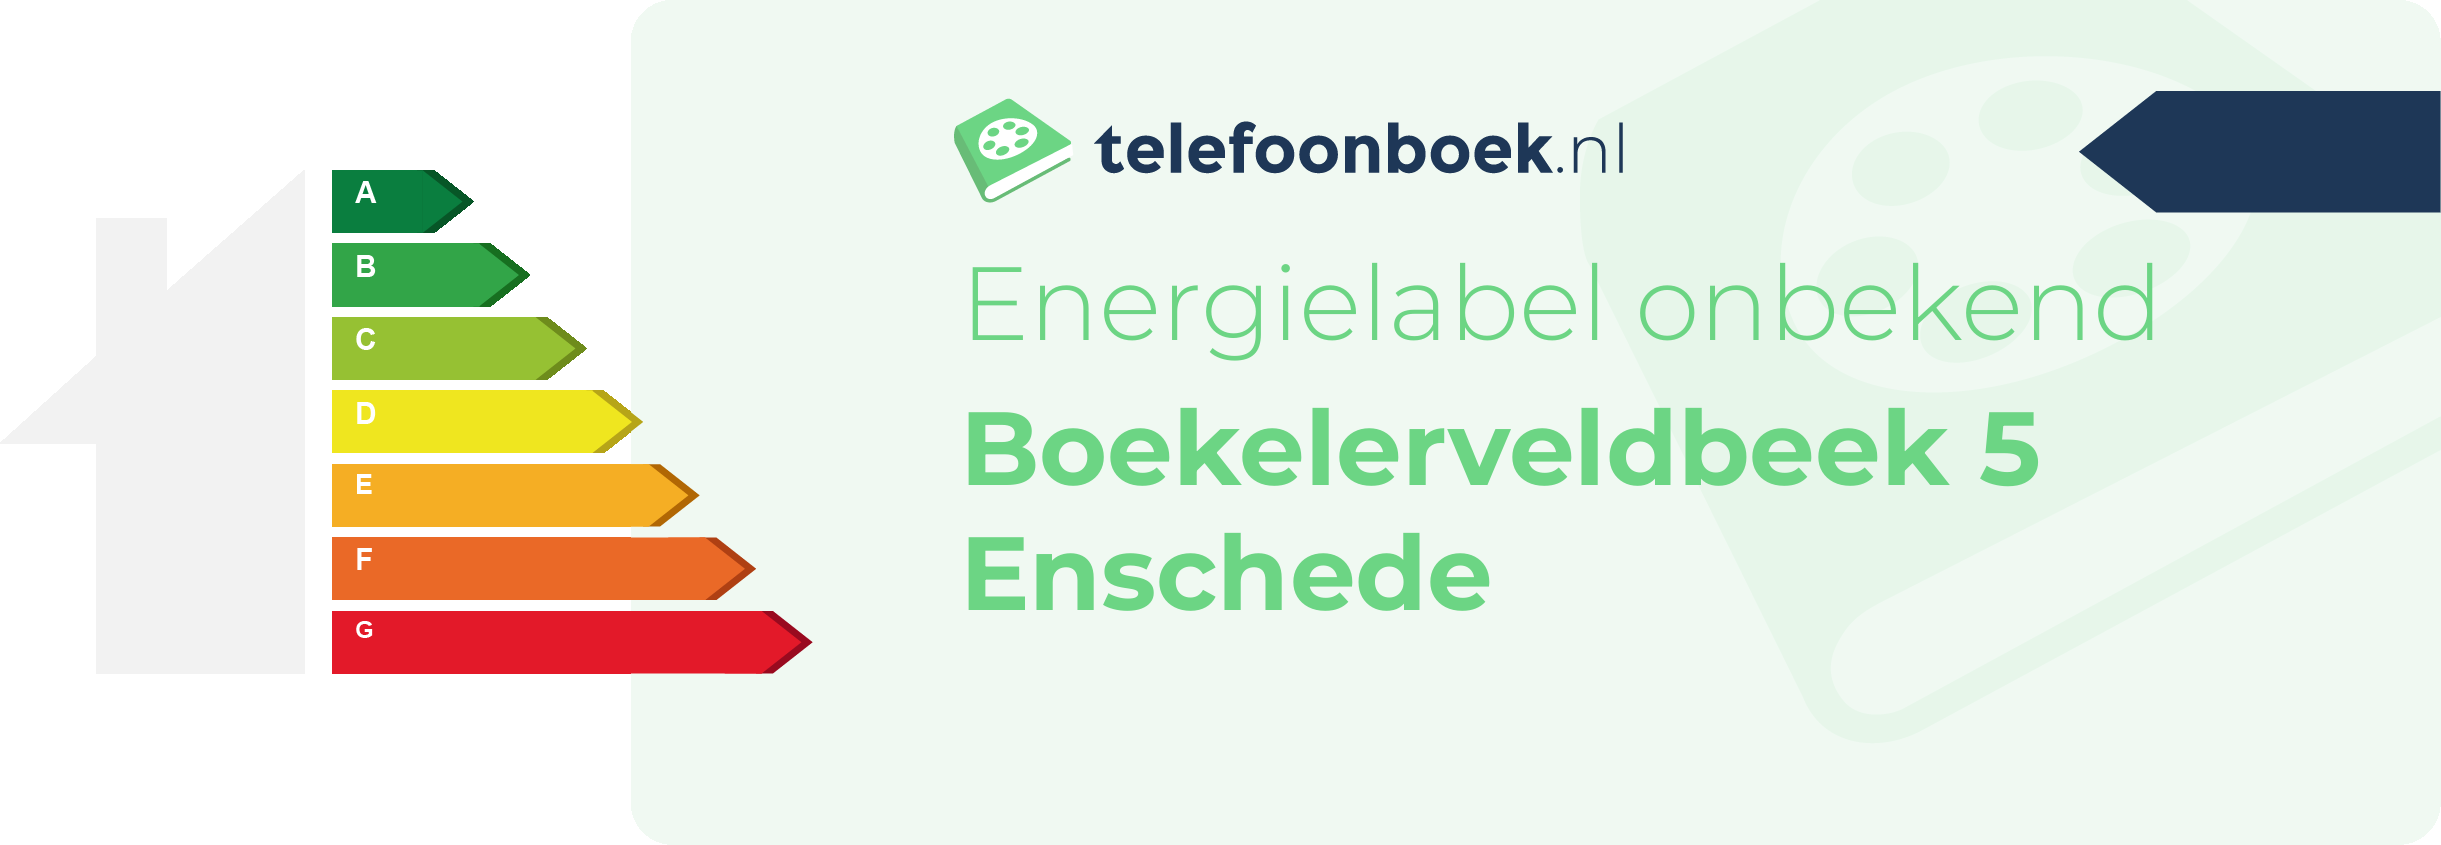 Energielabel Boekelerveldbeek 5 Enschede